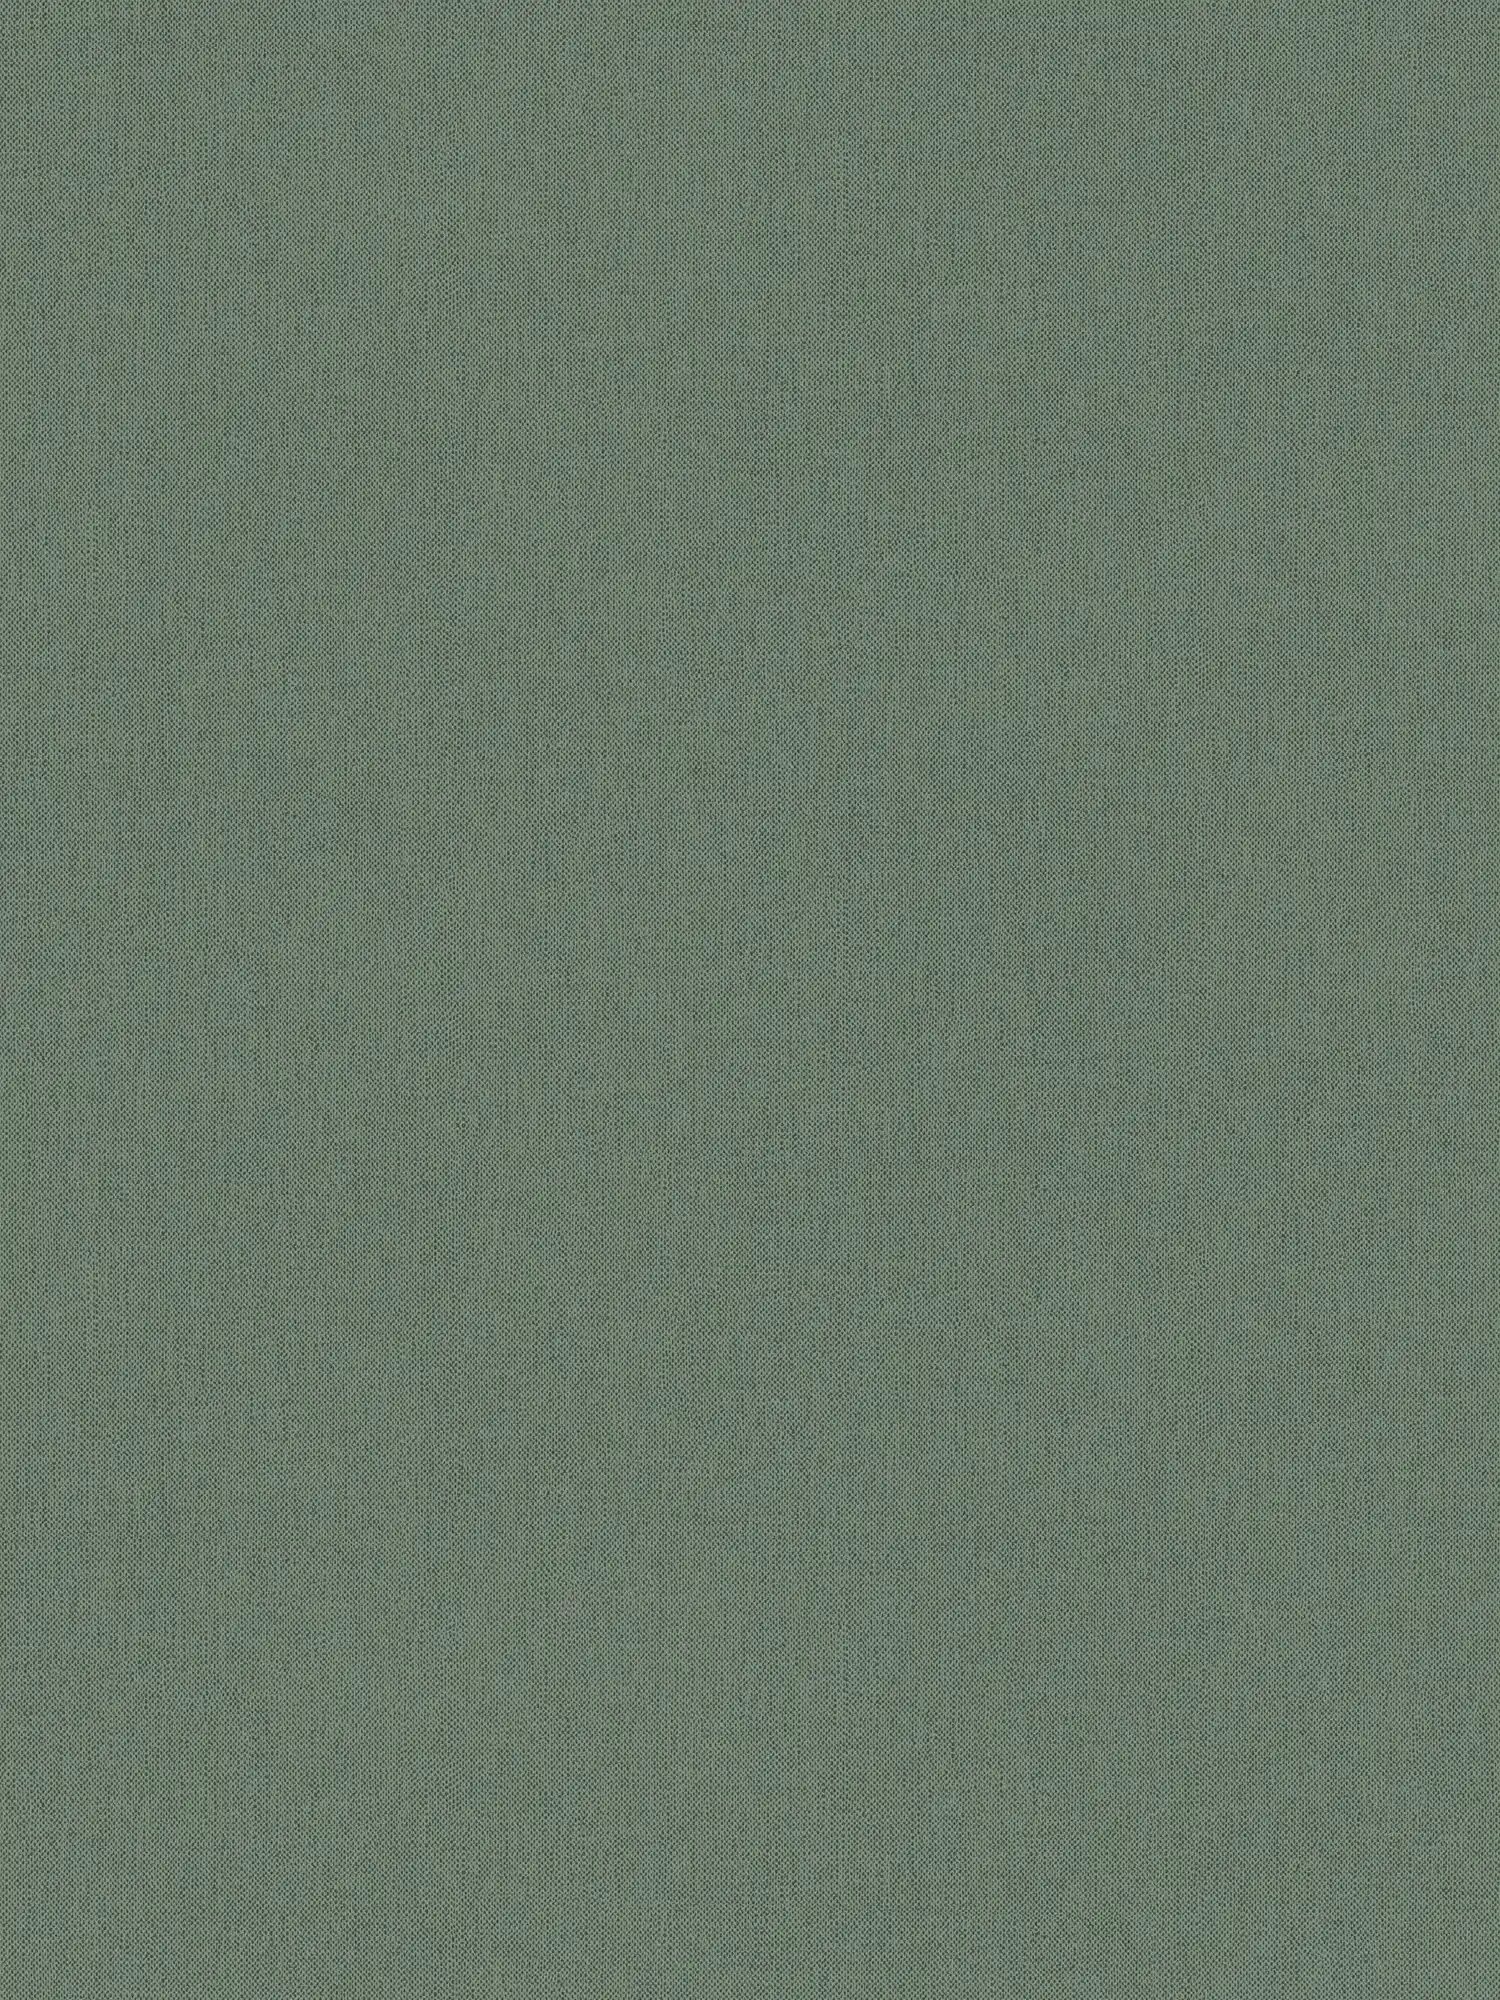 Einfarbige Tapete Tannengrün mit Textilstruktur – Grün
